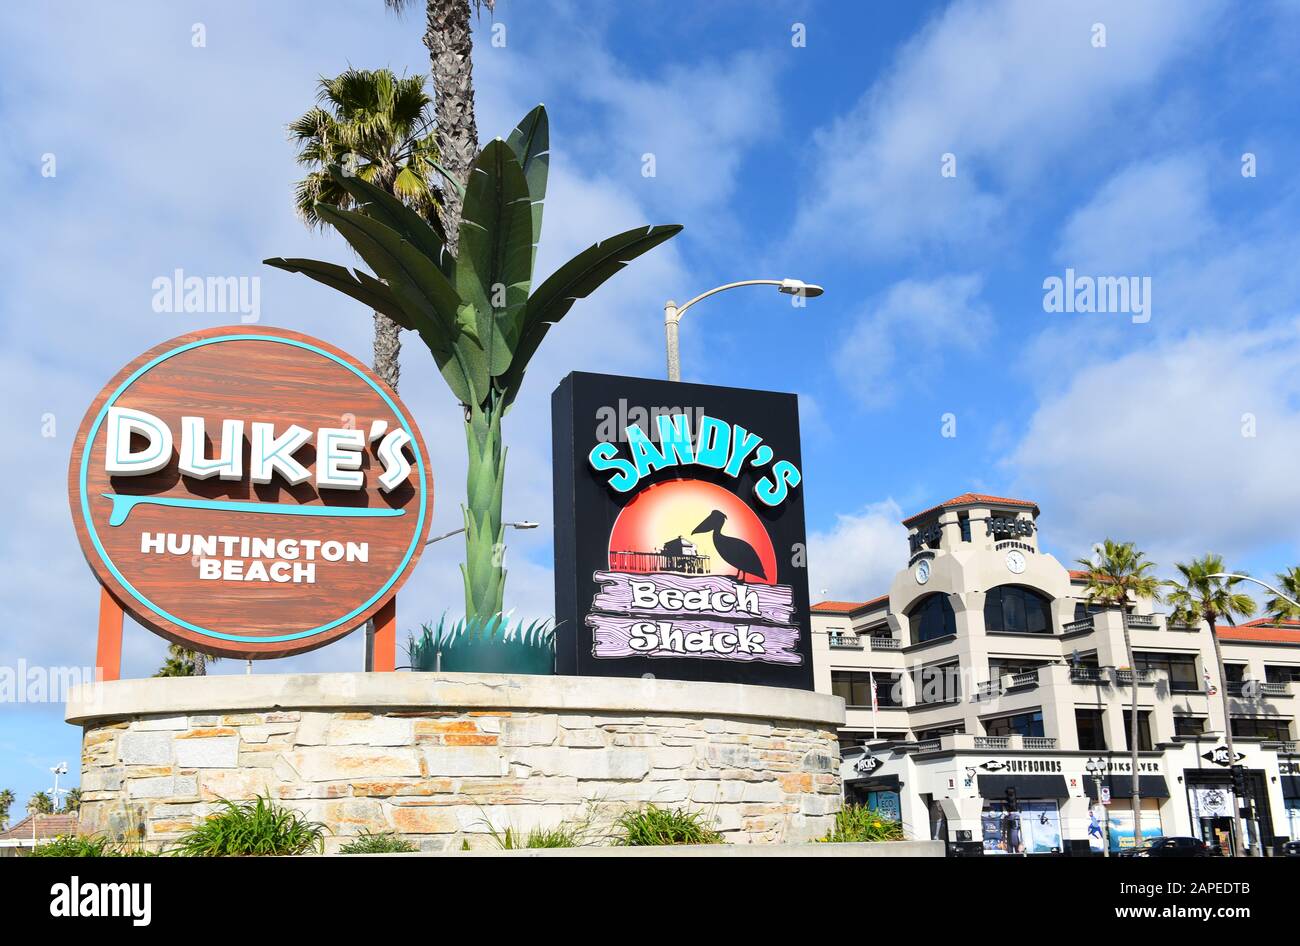 HUNTINGTON BEACH, KALIFORNIEN - 22. JANUAR 2020: Schild für Dukes Restaurant und Sandys Beach Shack am Pier in Huntington Beach. Stockfoto